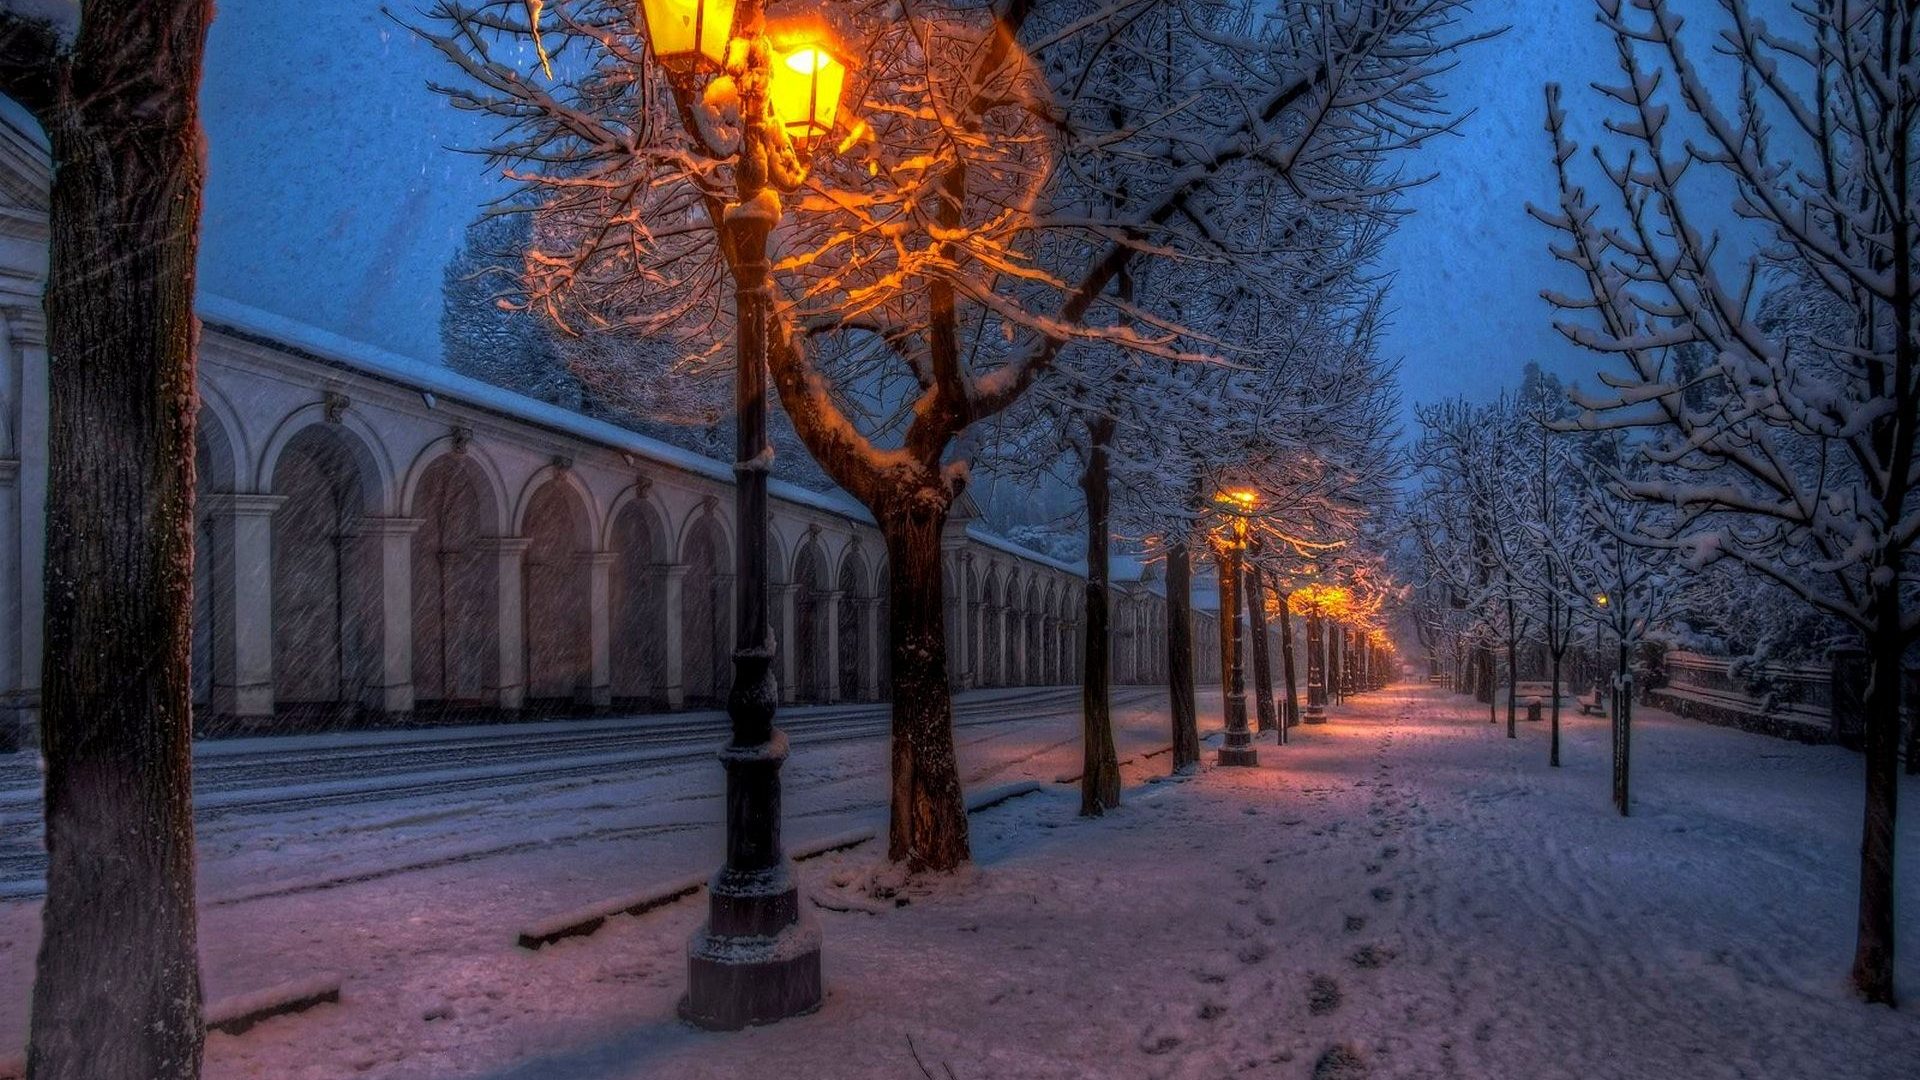 壁紙,街路灯,冬,雪,木,点灯